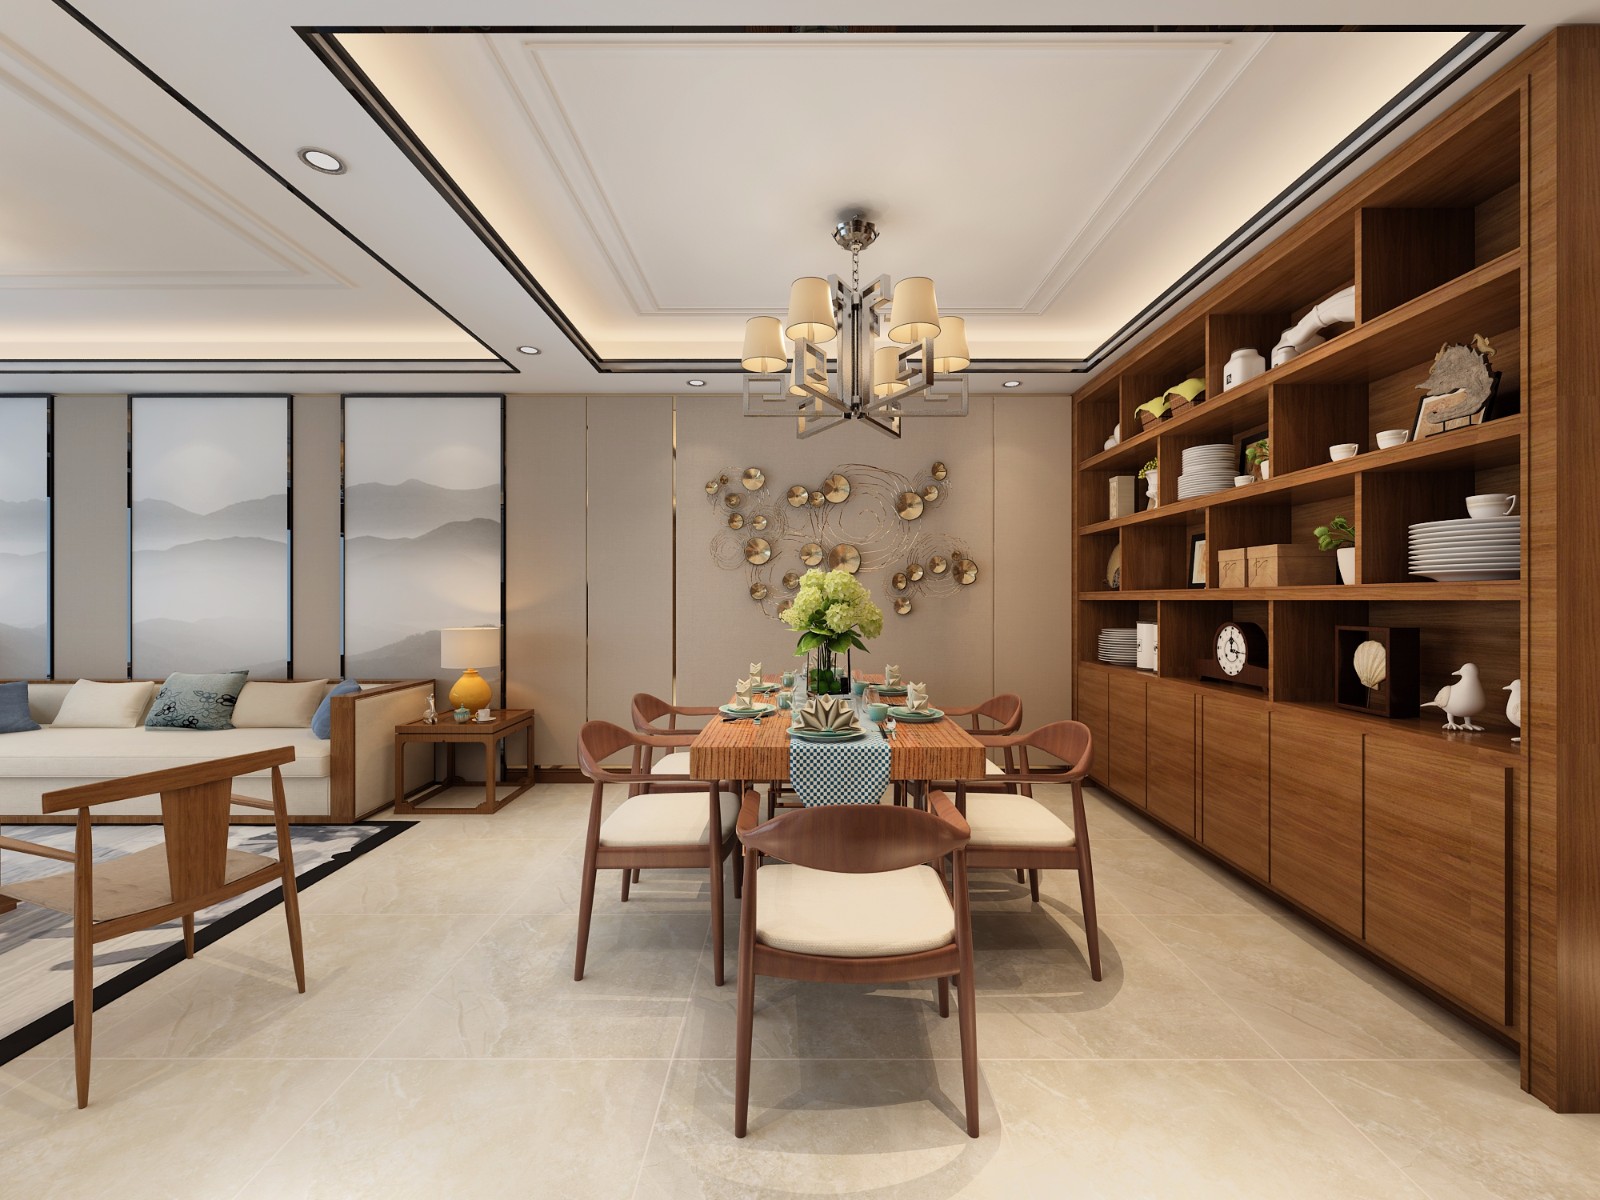 六大风格客厅装修效果欣赏 简约、中式、轻奢、各有千秋 - 本地资讯 - 装一网